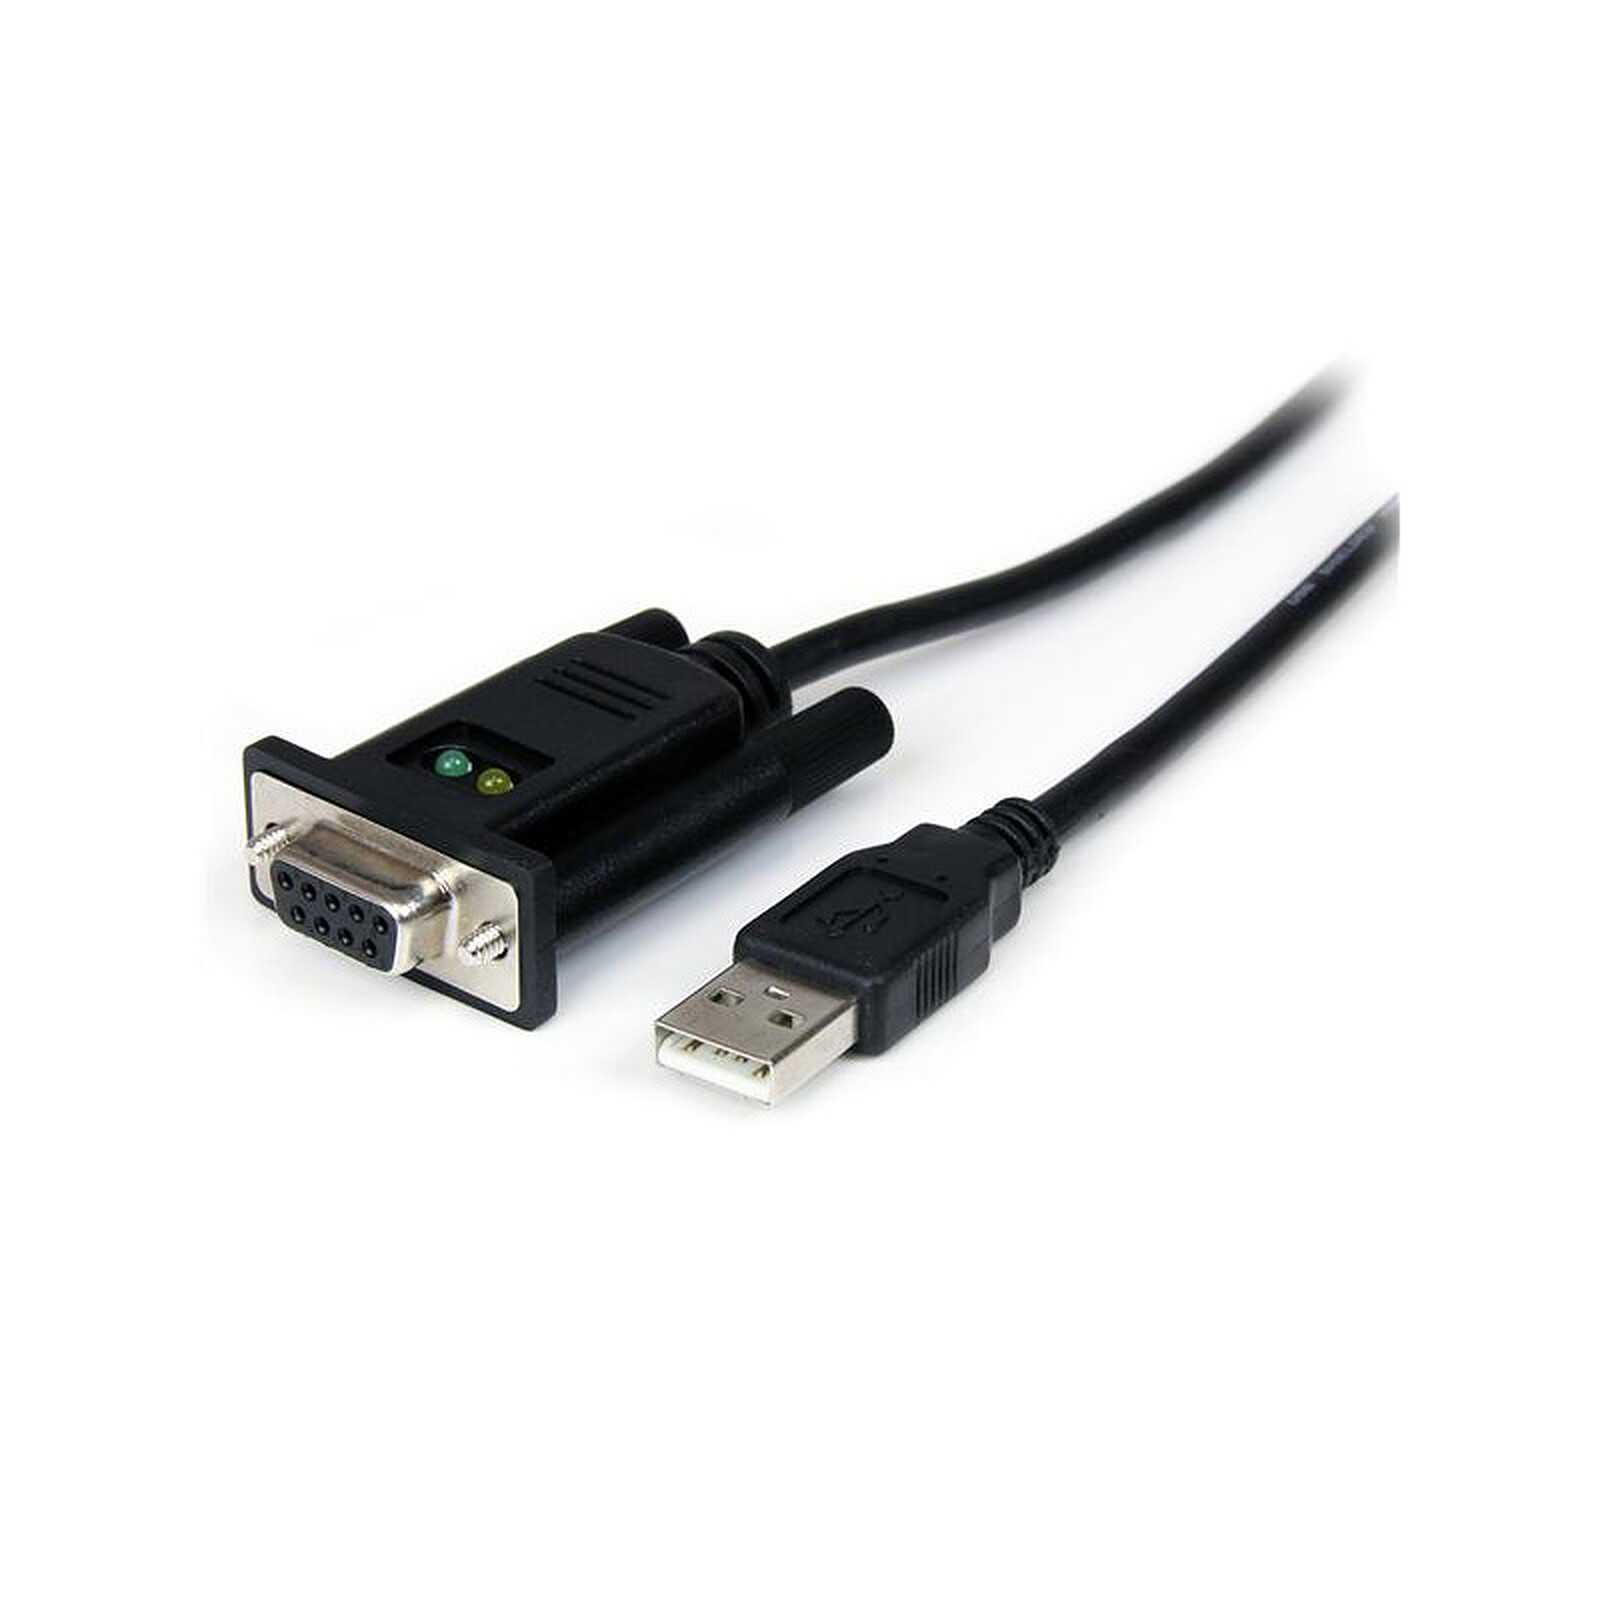 Rallonge USB RS PRO, USB A vers USB A, 1m, Noir